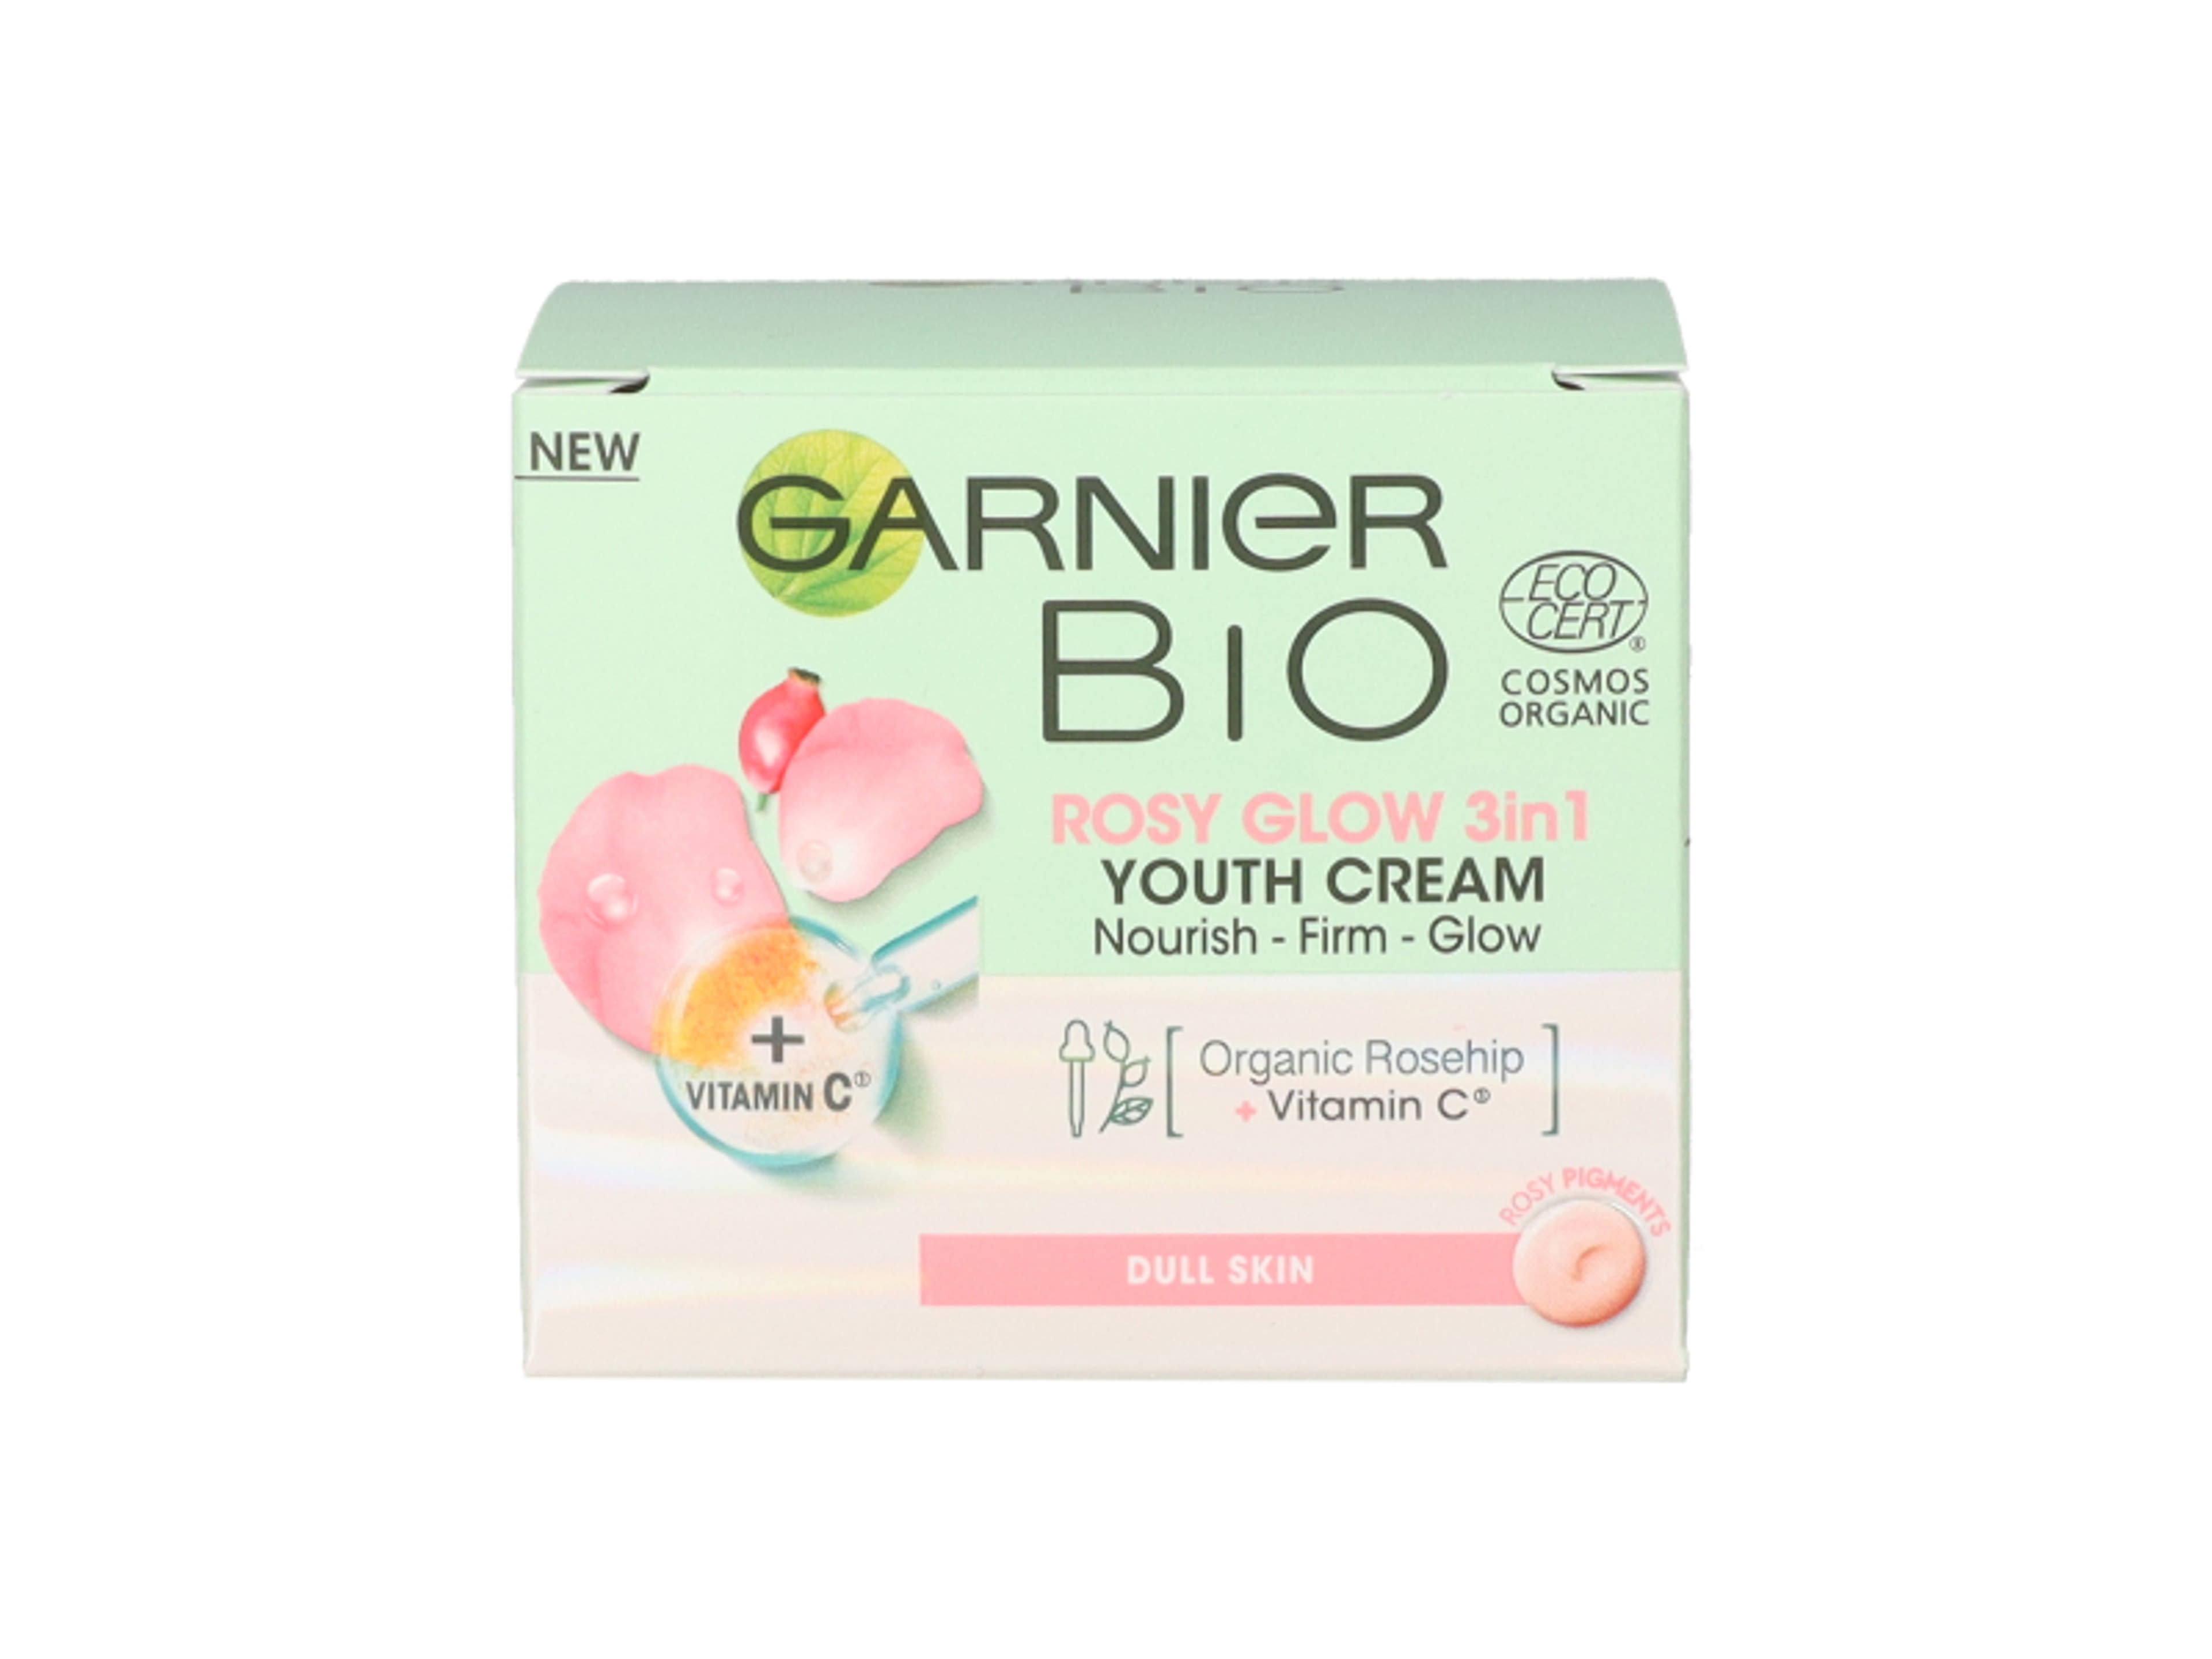 Garnier bio rosyglow 3in1 youth cream - 50 ml